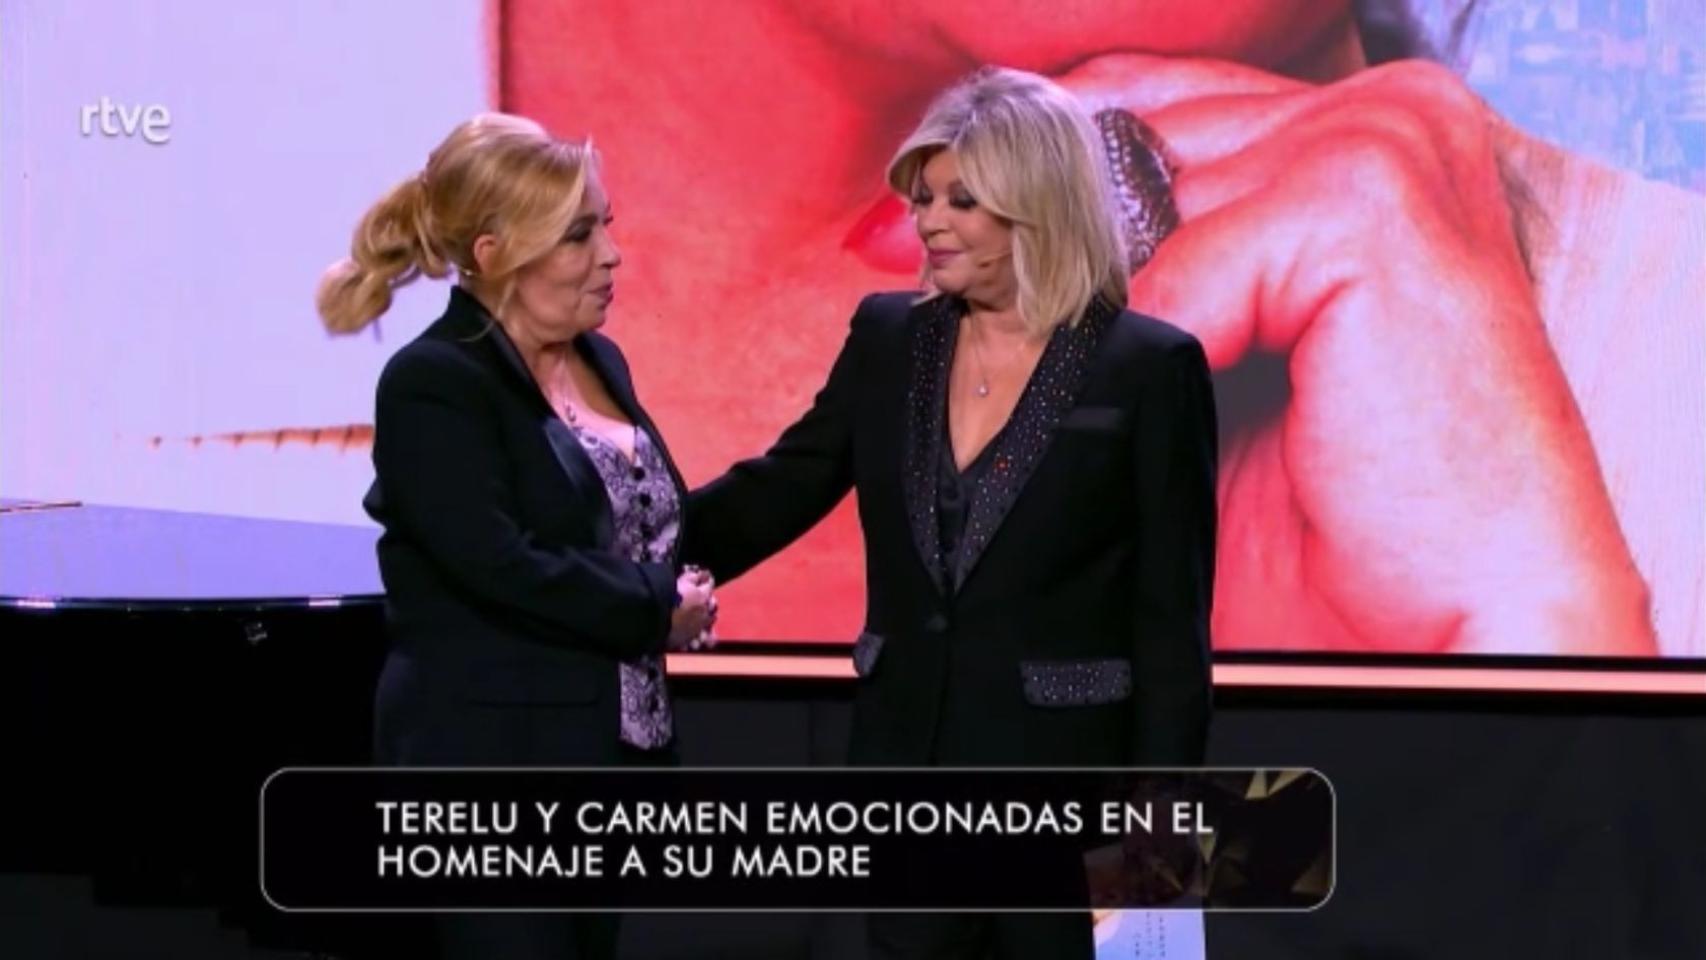 Terelu Campos y Carmen Borrego, muy emocionadas en el homenaje a su madre.